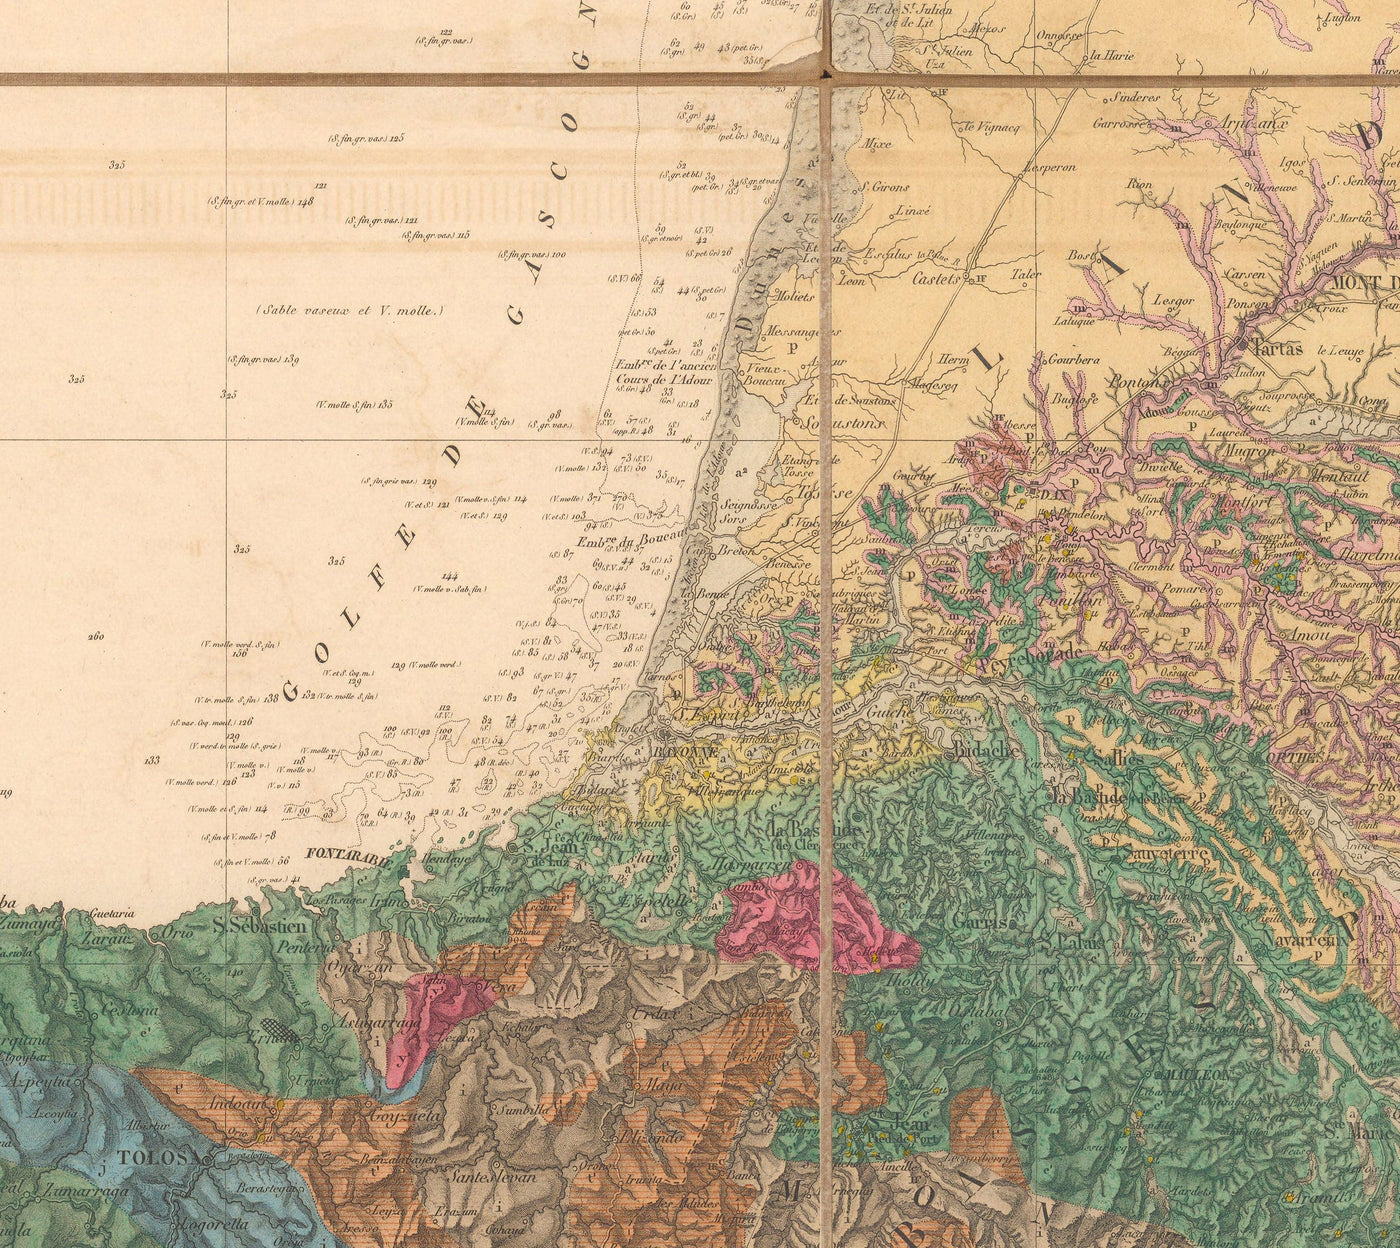 Ancienne carte géologique de la France, 1840 par André Brochant de Villiers - Europe occidentale, Belgique